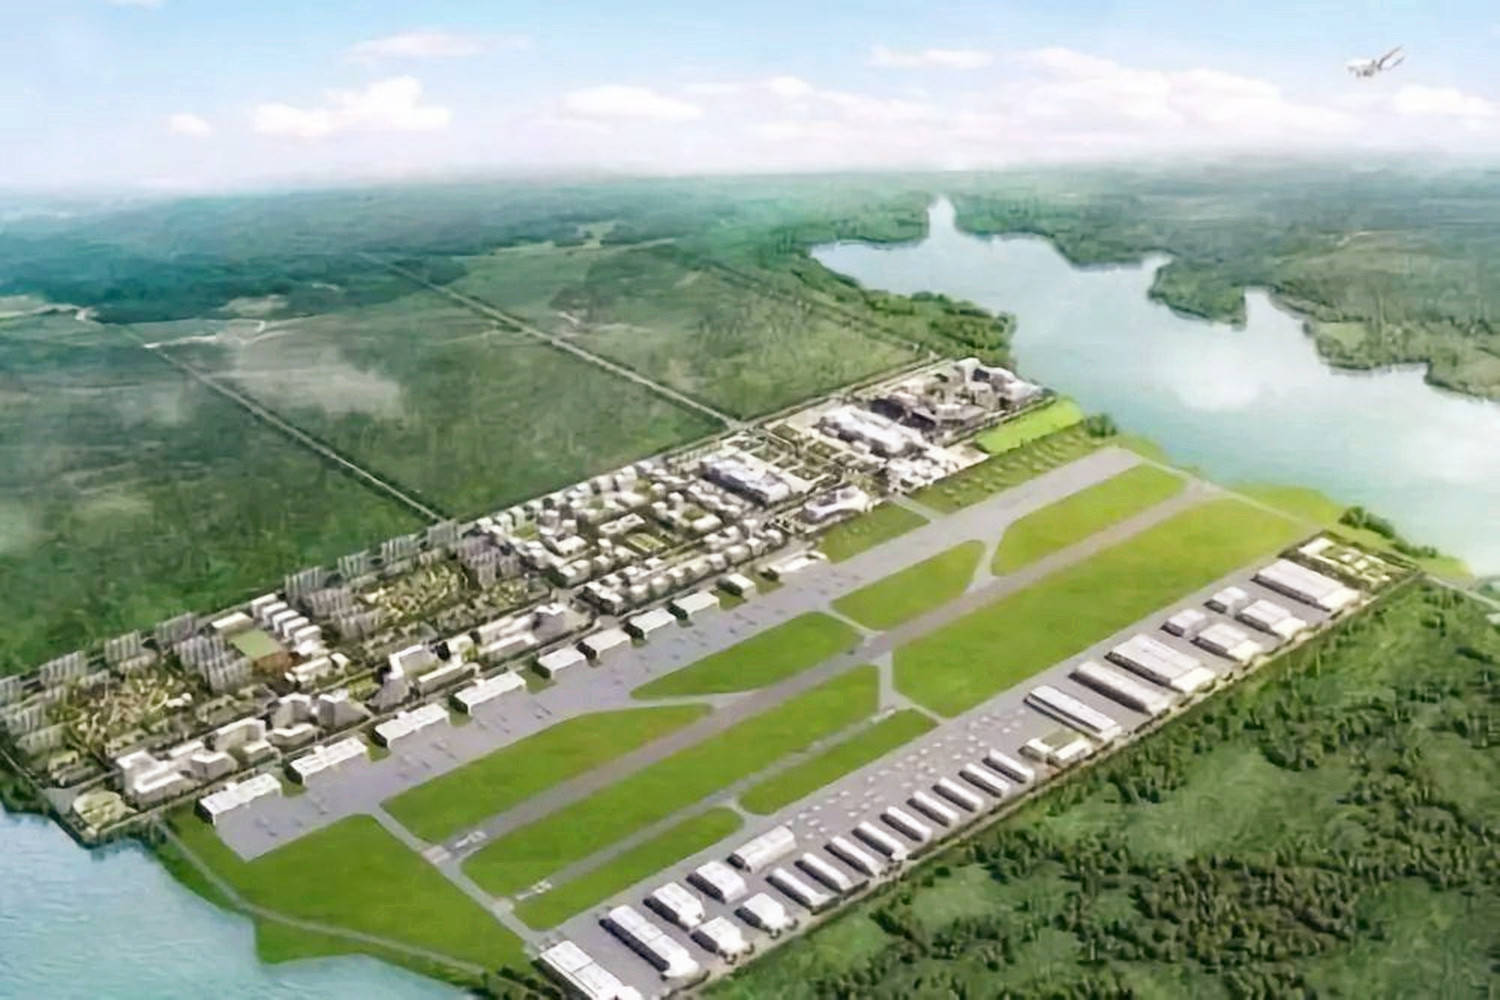 江西在建一座通用机场,占地约350亩,总投资约2亿元